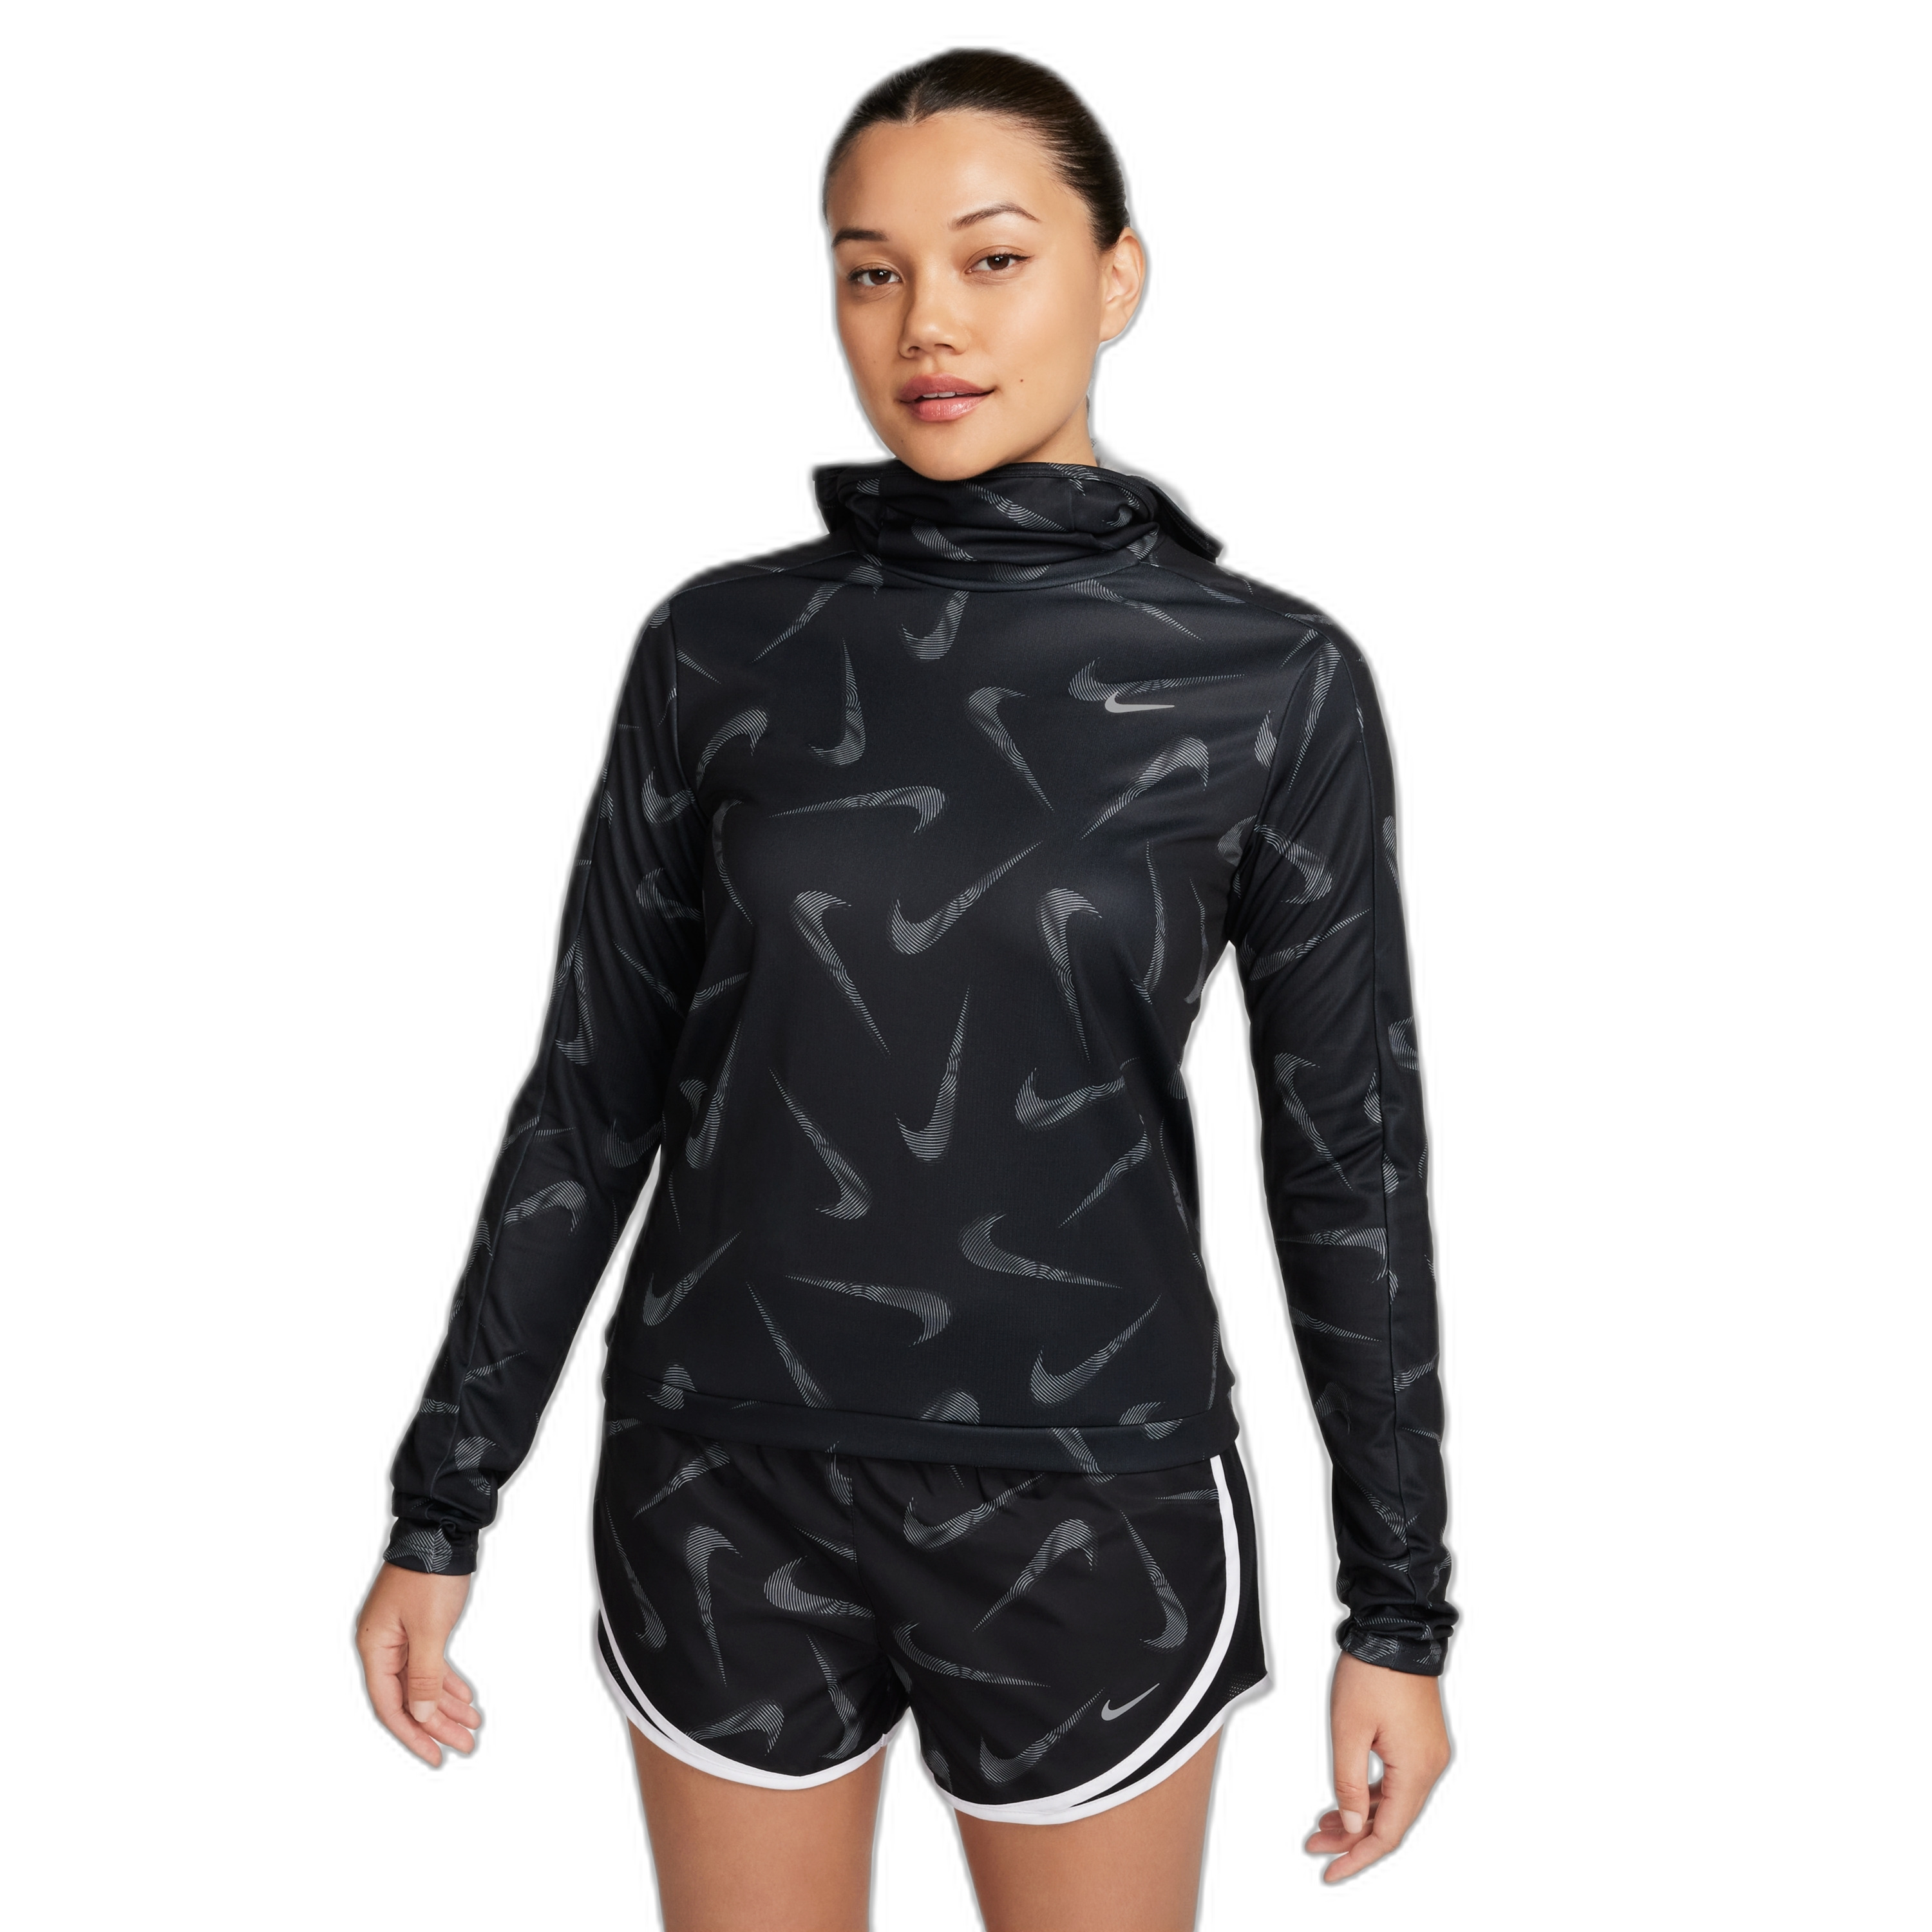 Veste de survêtement à capuche Dri-FIT femme Nike Swoosh Print Pacer